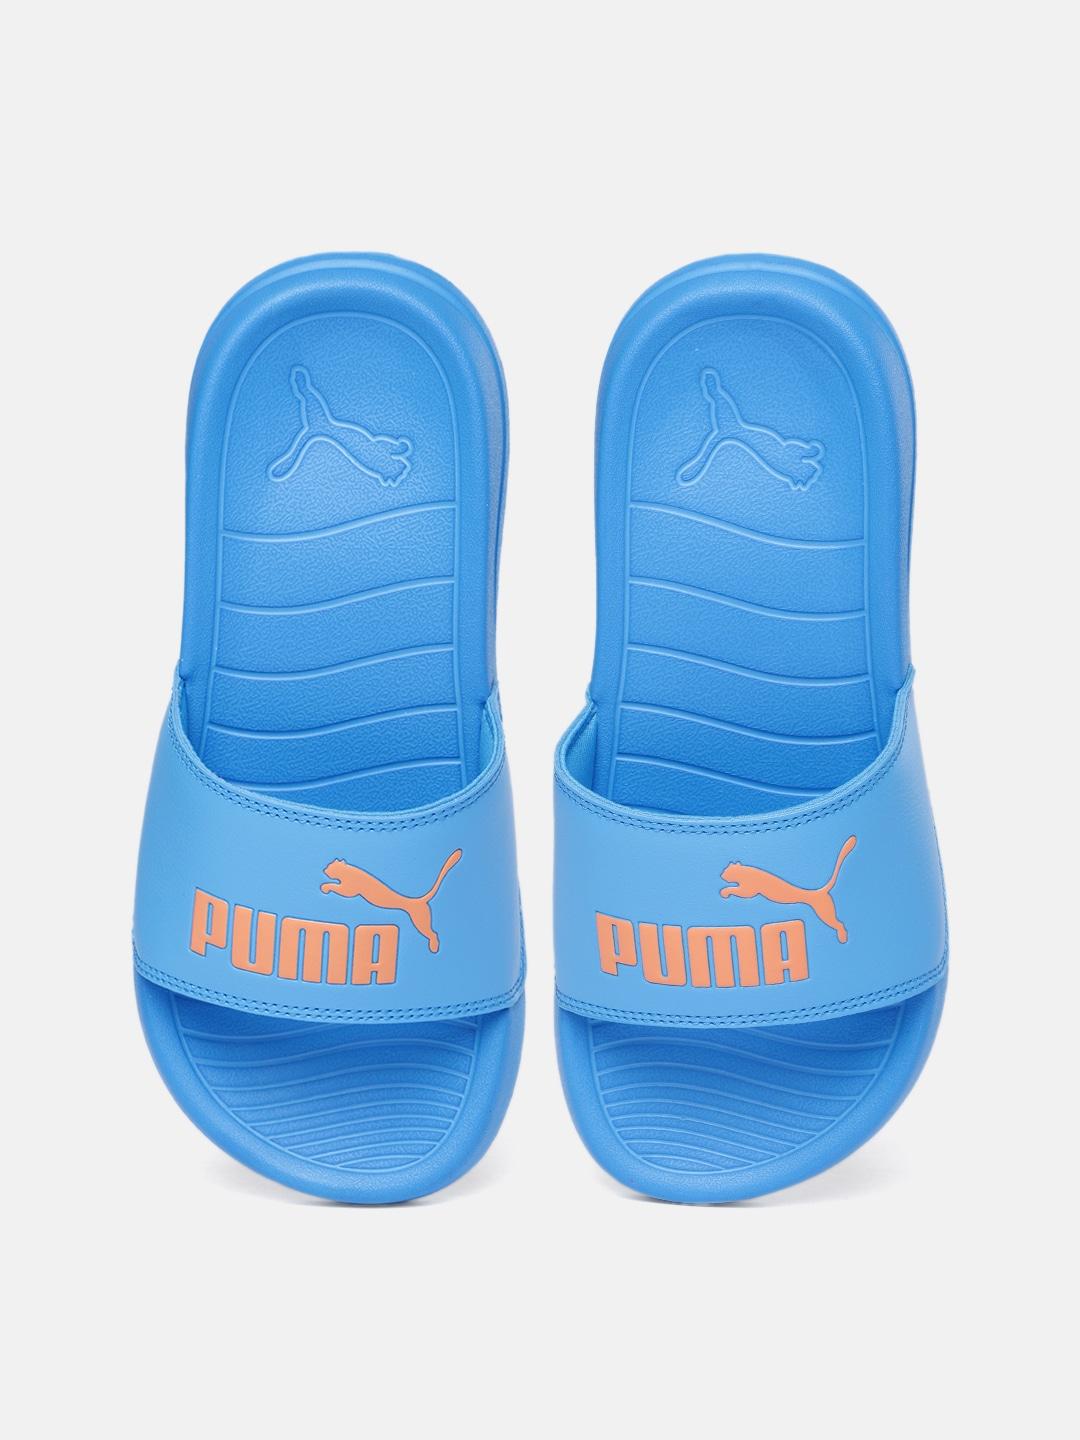 Puma Unisex Kids Blue Printed Sliders